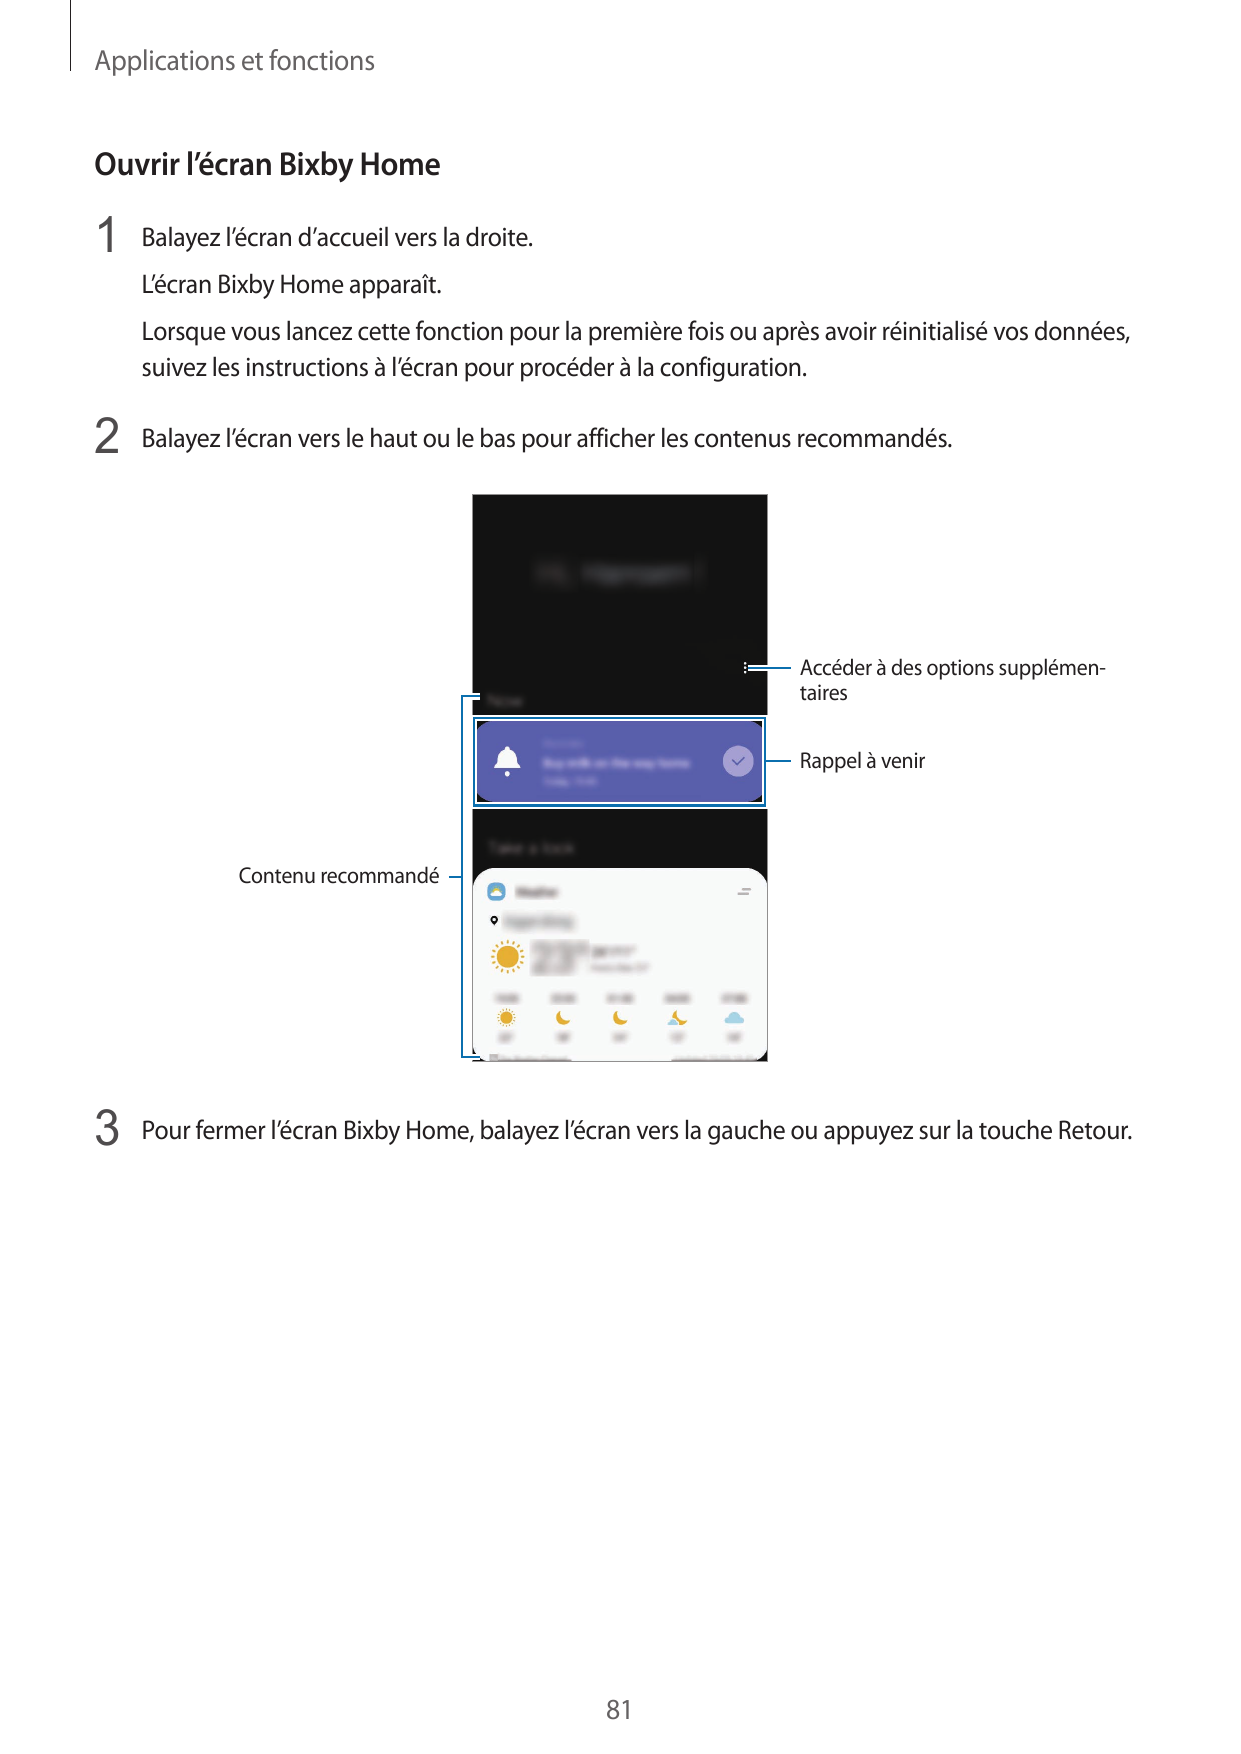 Applications et fonctionsOuvrir l’écran Bixby Home1 Balayez l’écran d’accueil vers la droite.L’écran Bixby Home apparaît.Lorsque